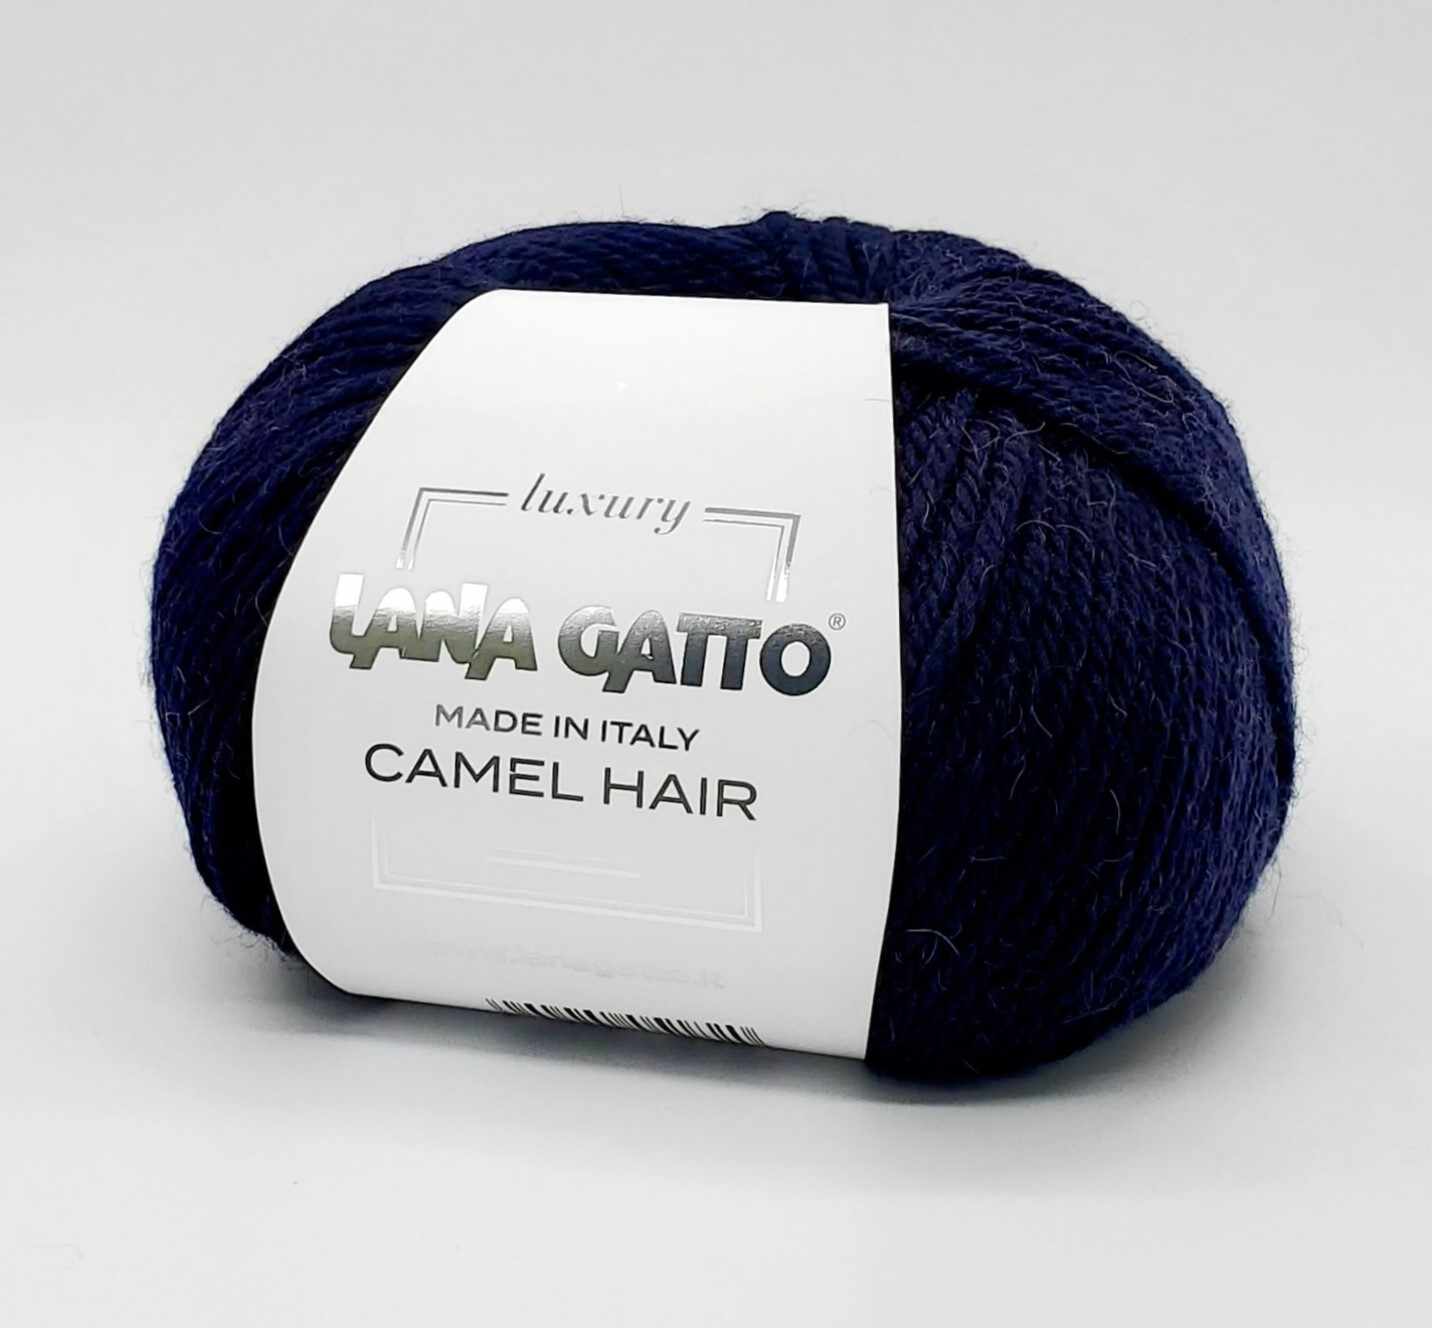 PŘÍZE LANA GATTO | Příze Lana Gatto Camel Hair tmavá modrá | Eshop, vlny,  příze a další příslušenství 